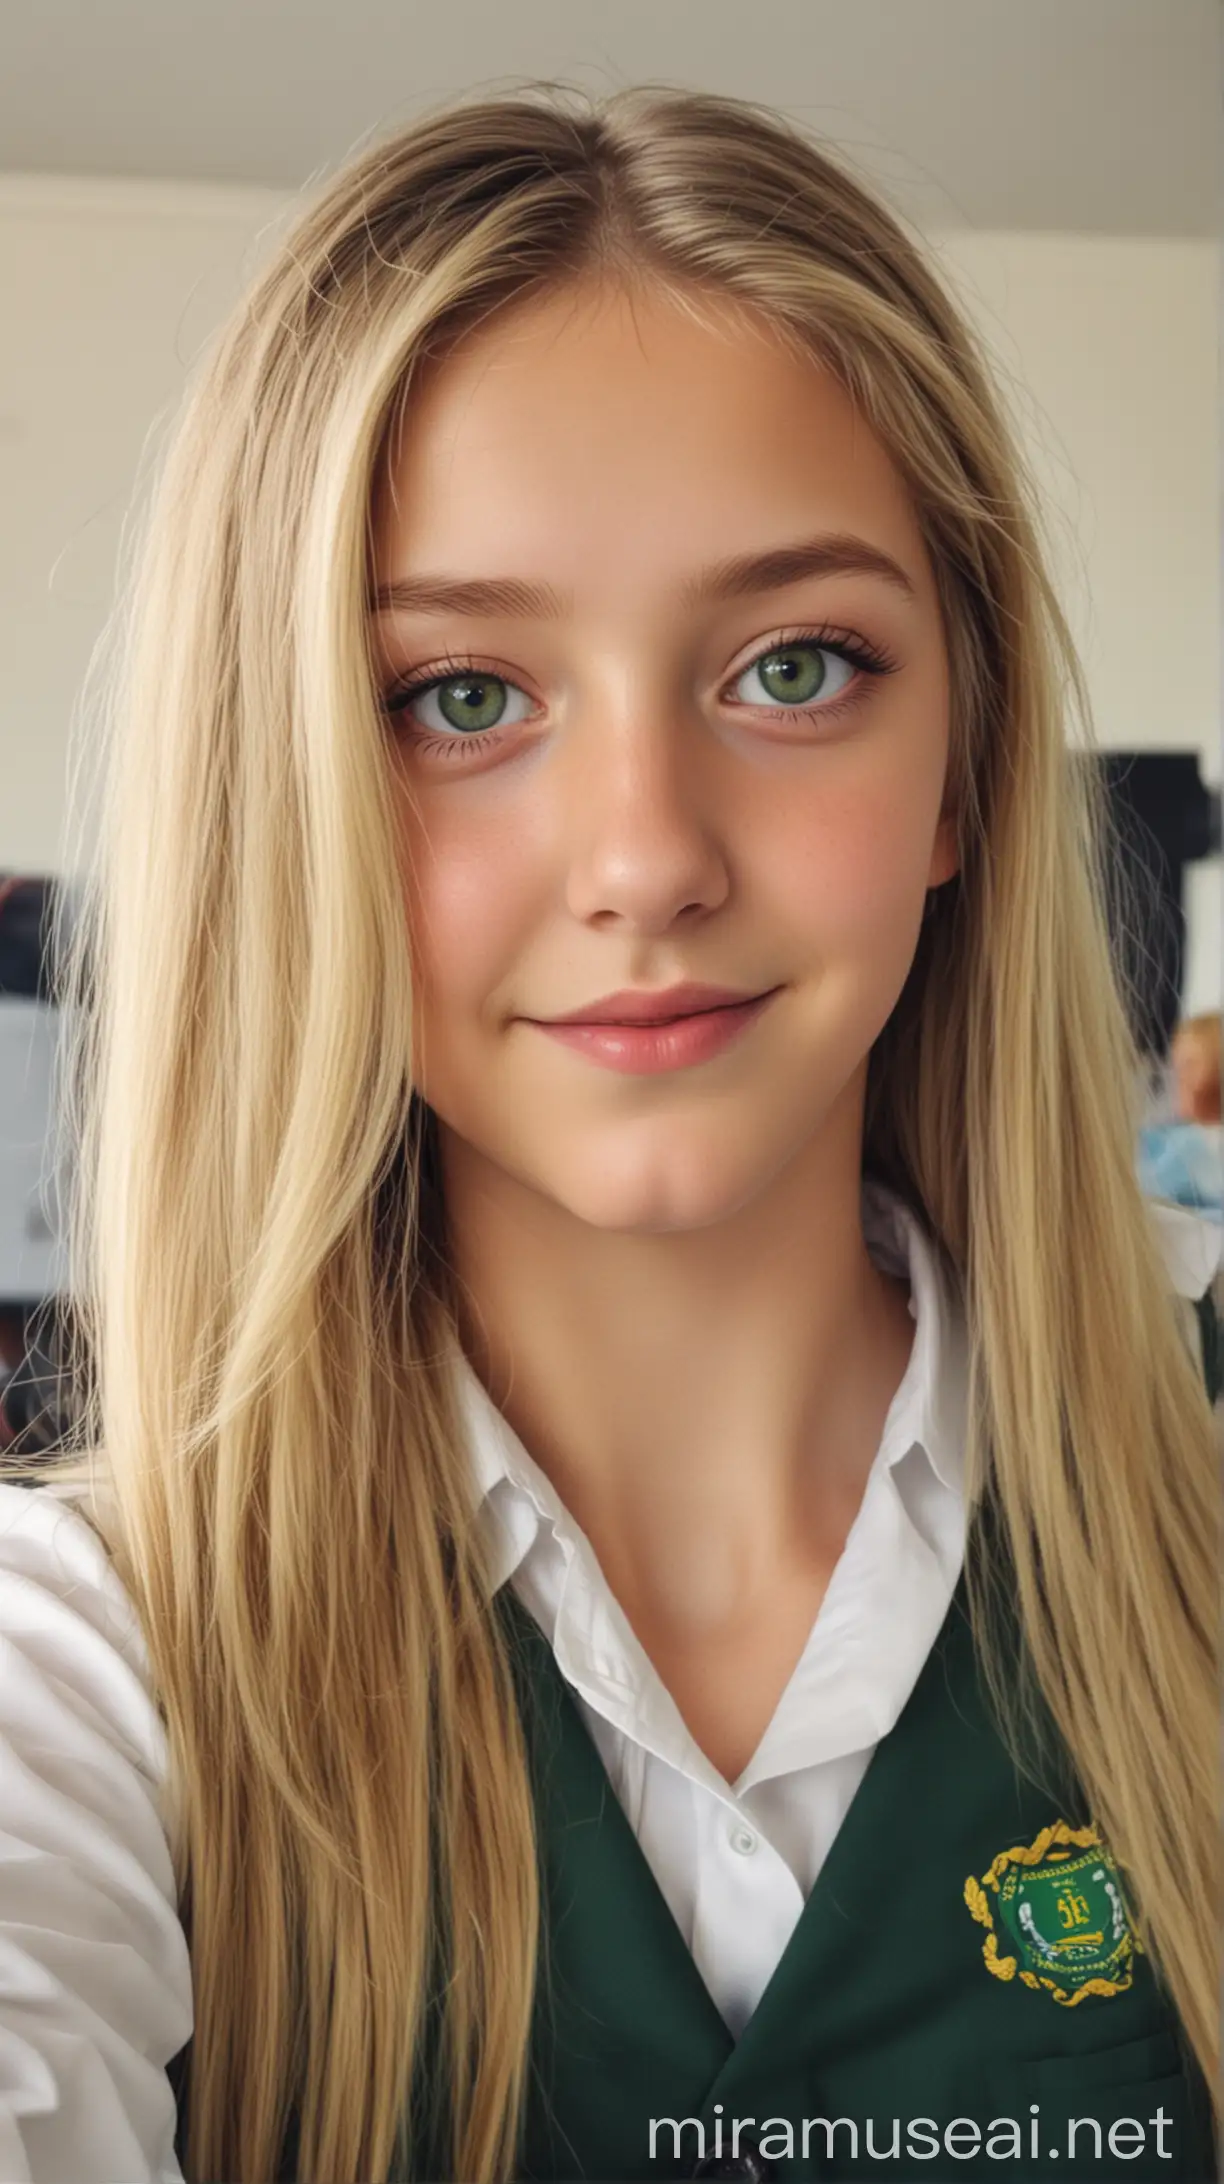 Teenage Girl with Blonde Hair Taking Selfie in Classroom Full of People